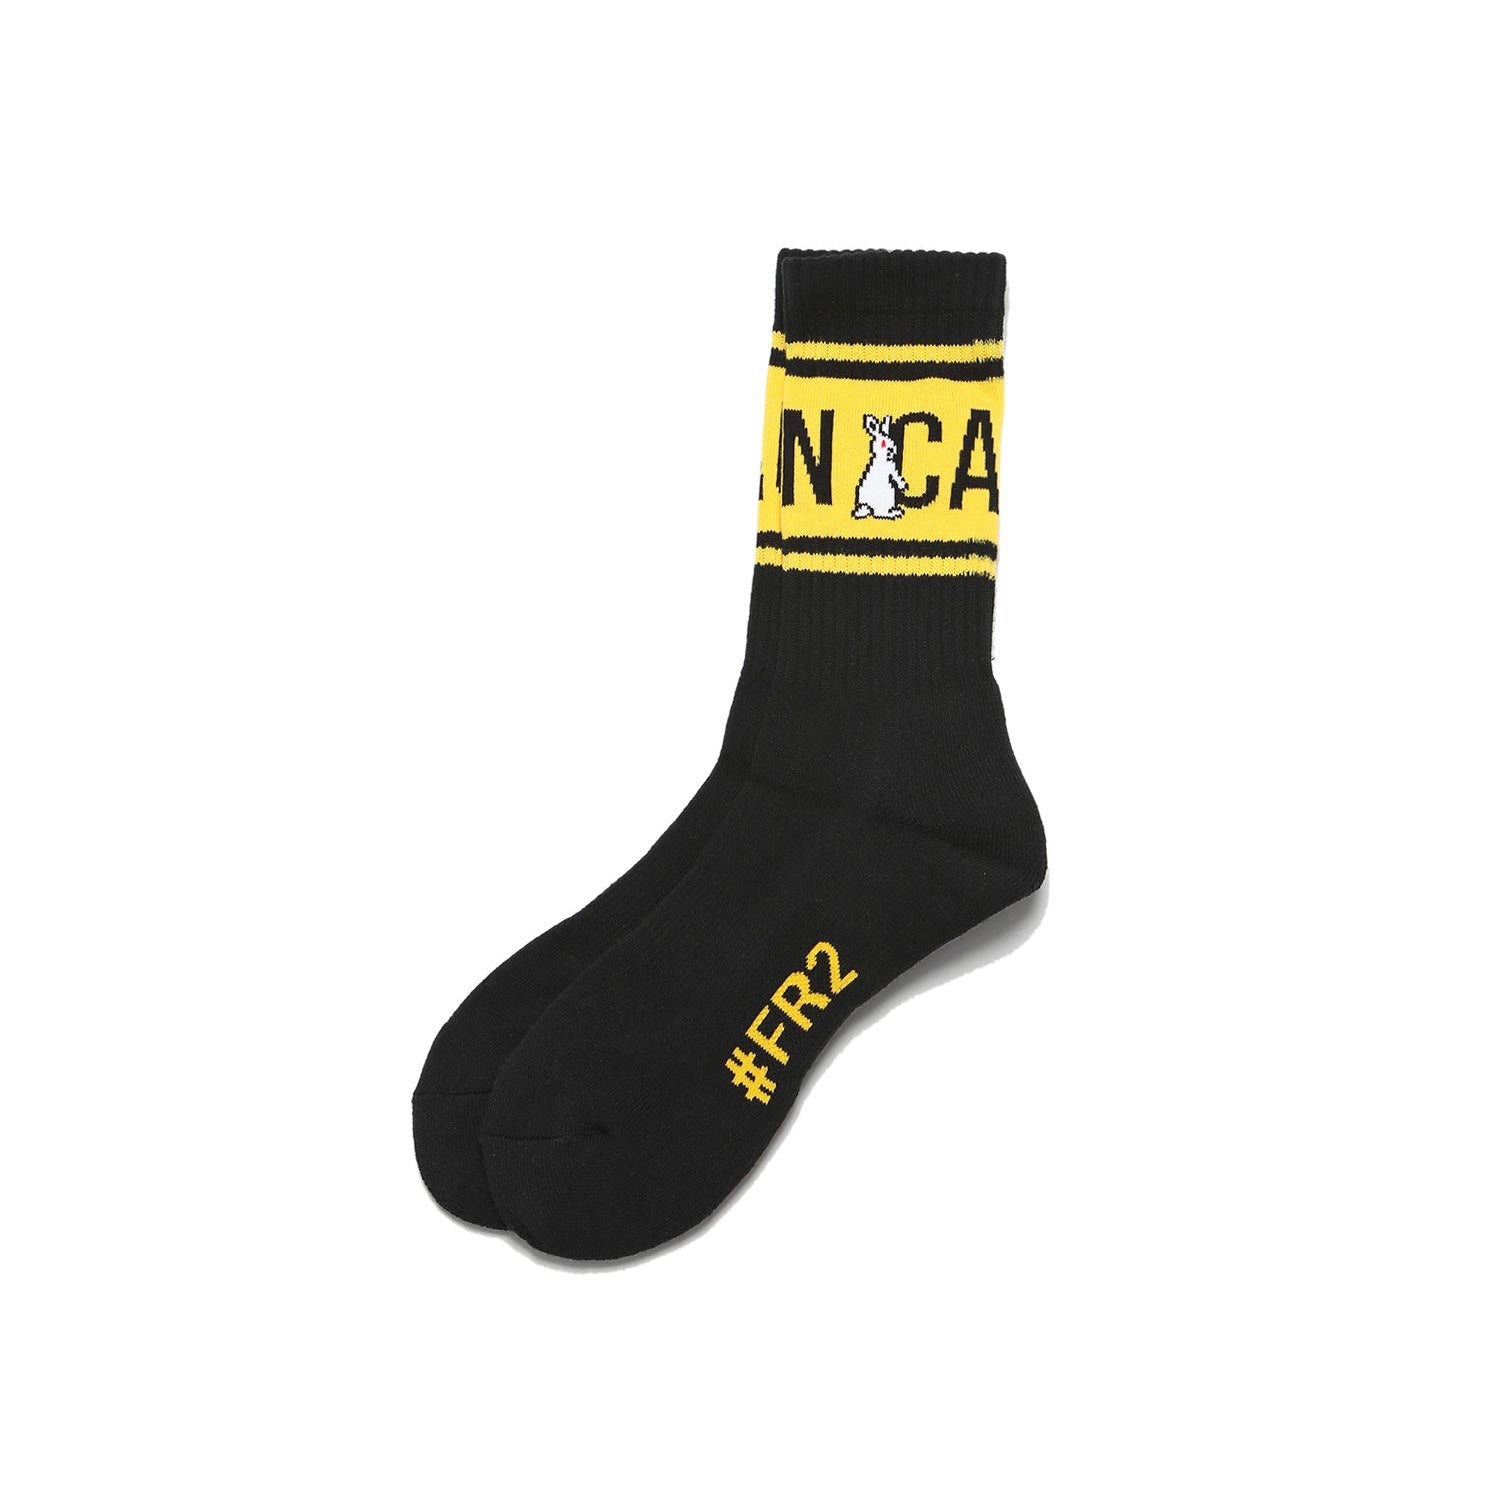 Caution Socks FRA622 Black